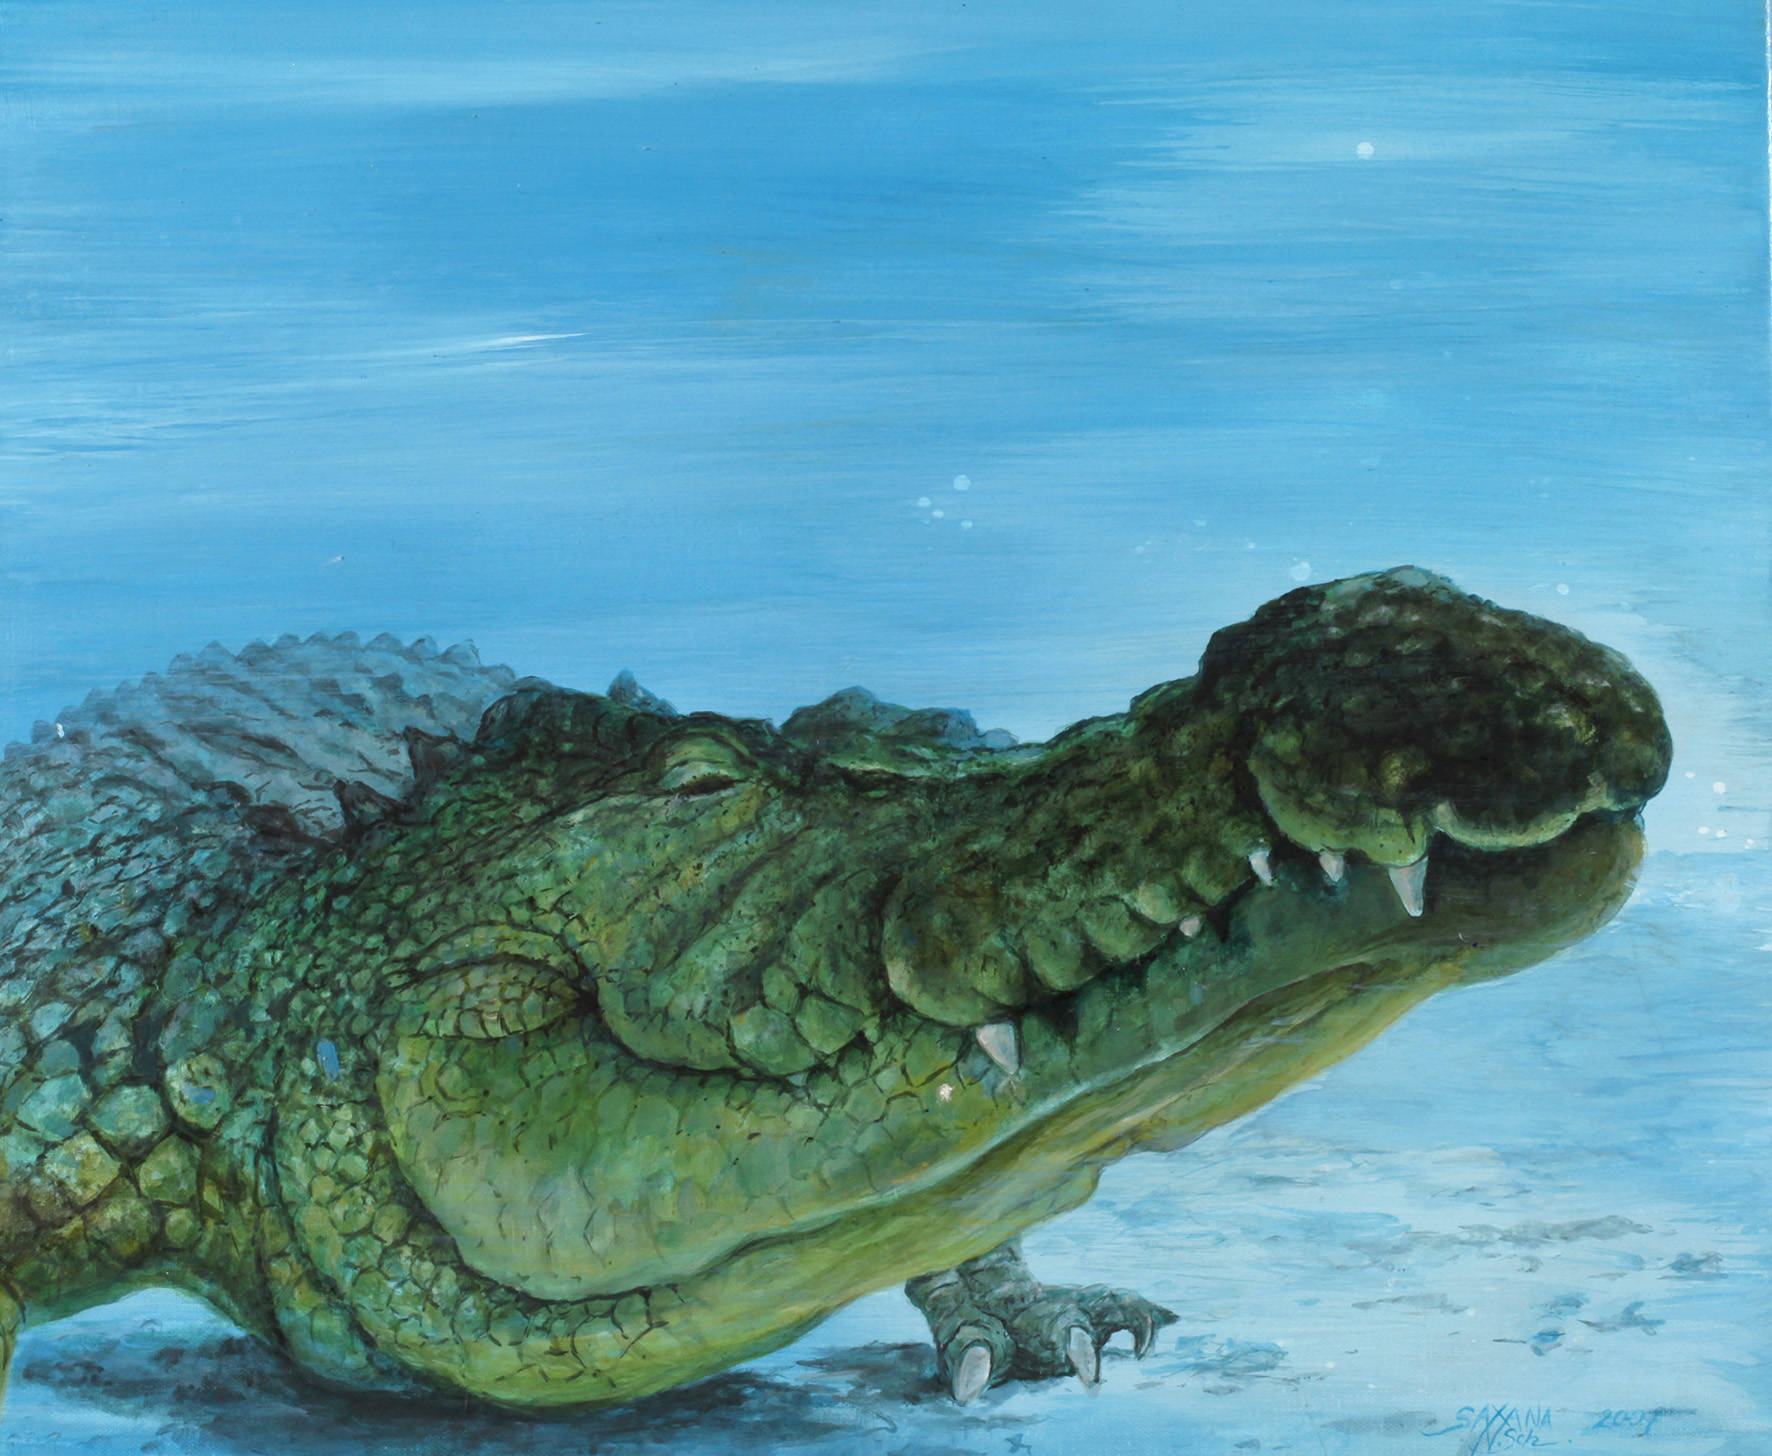 Saxana N. Schötschel, Alligator